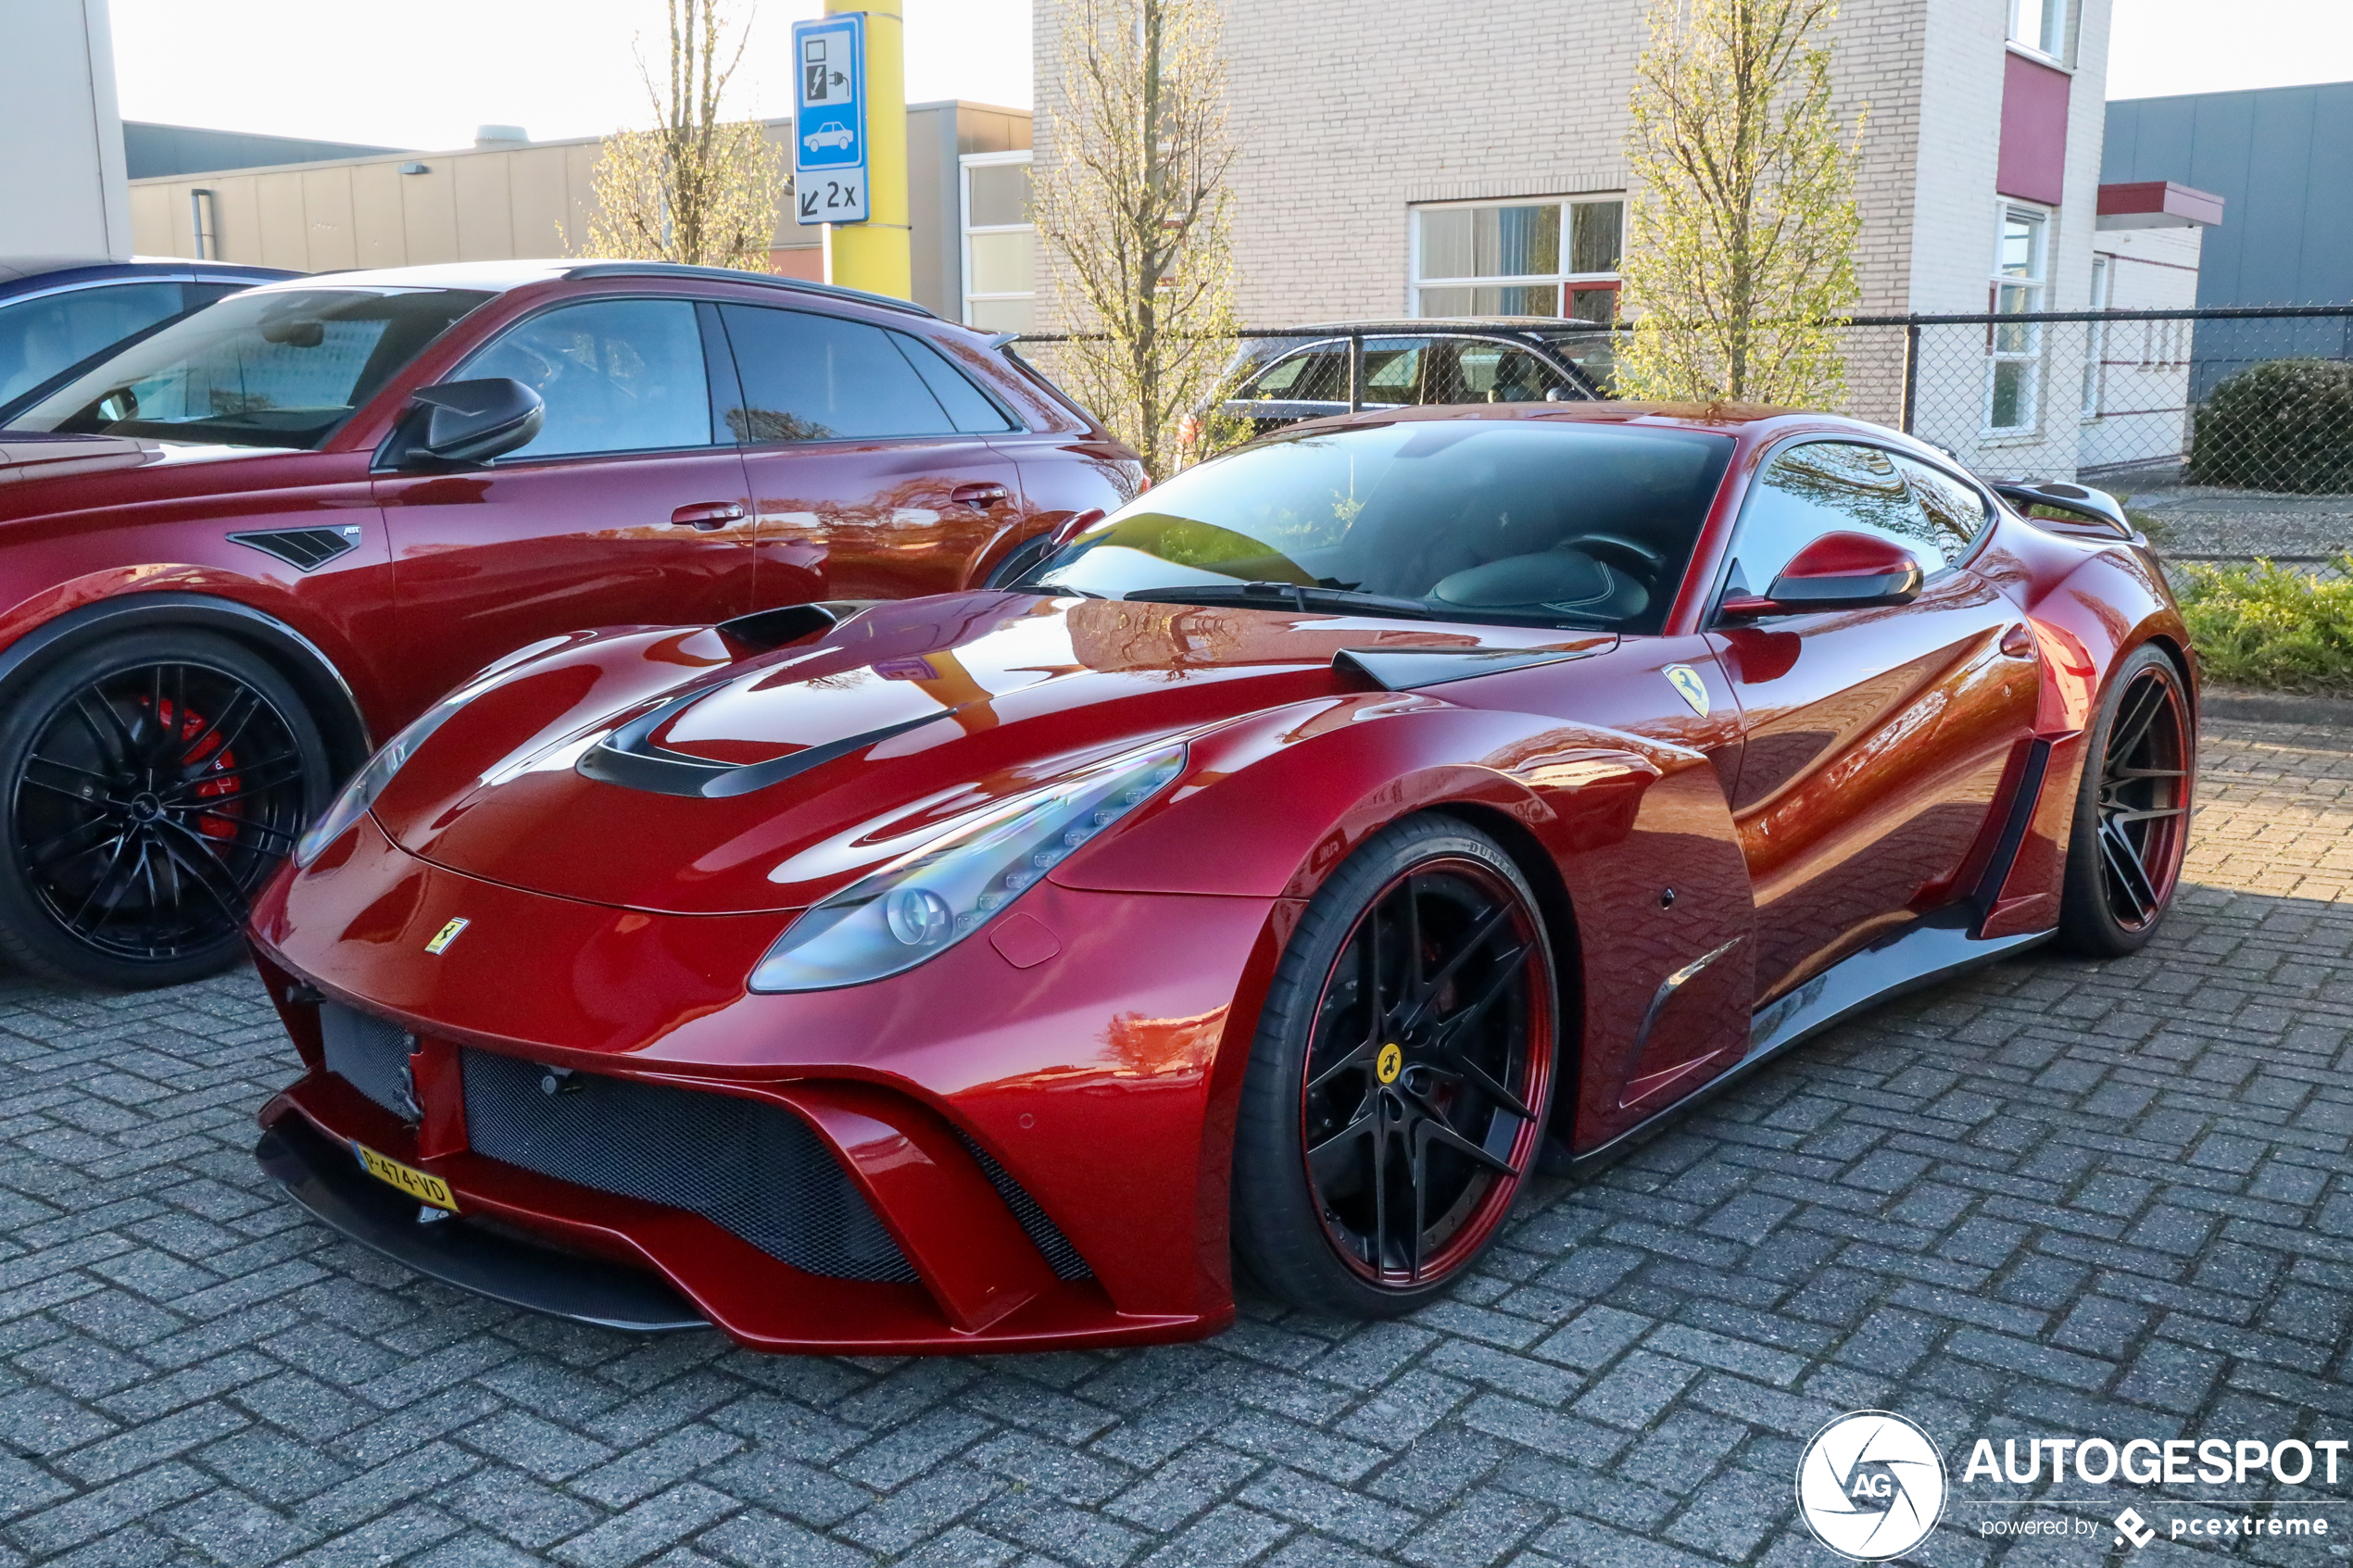 Ferrari met veel te lange naam in Etten-Leur